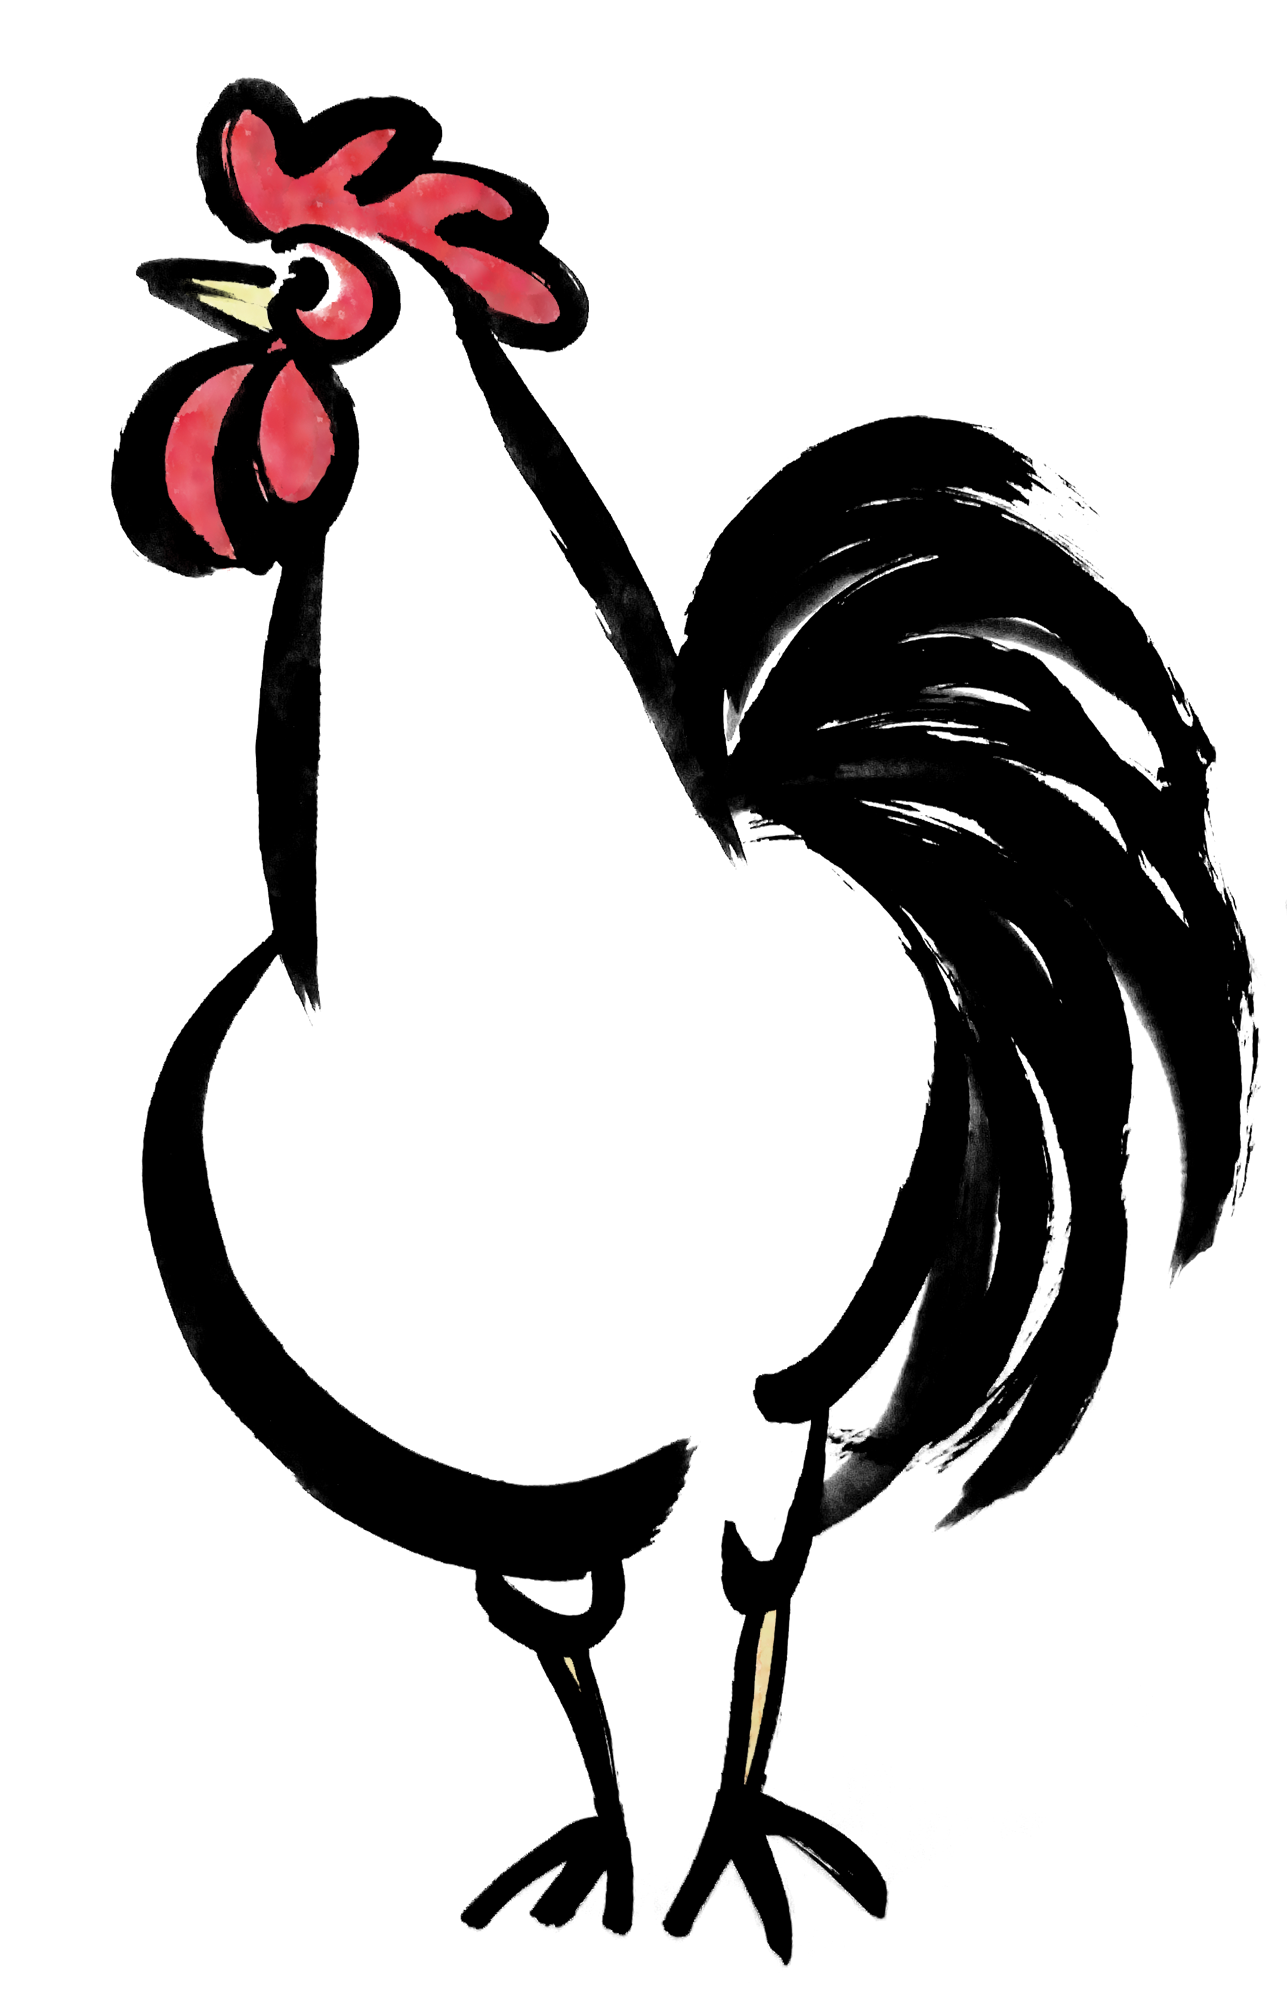 正面から見たニワトリ鶏墨絵 無料年賀状素材干支酉年 無料イラスト配布サイトマンガトップ